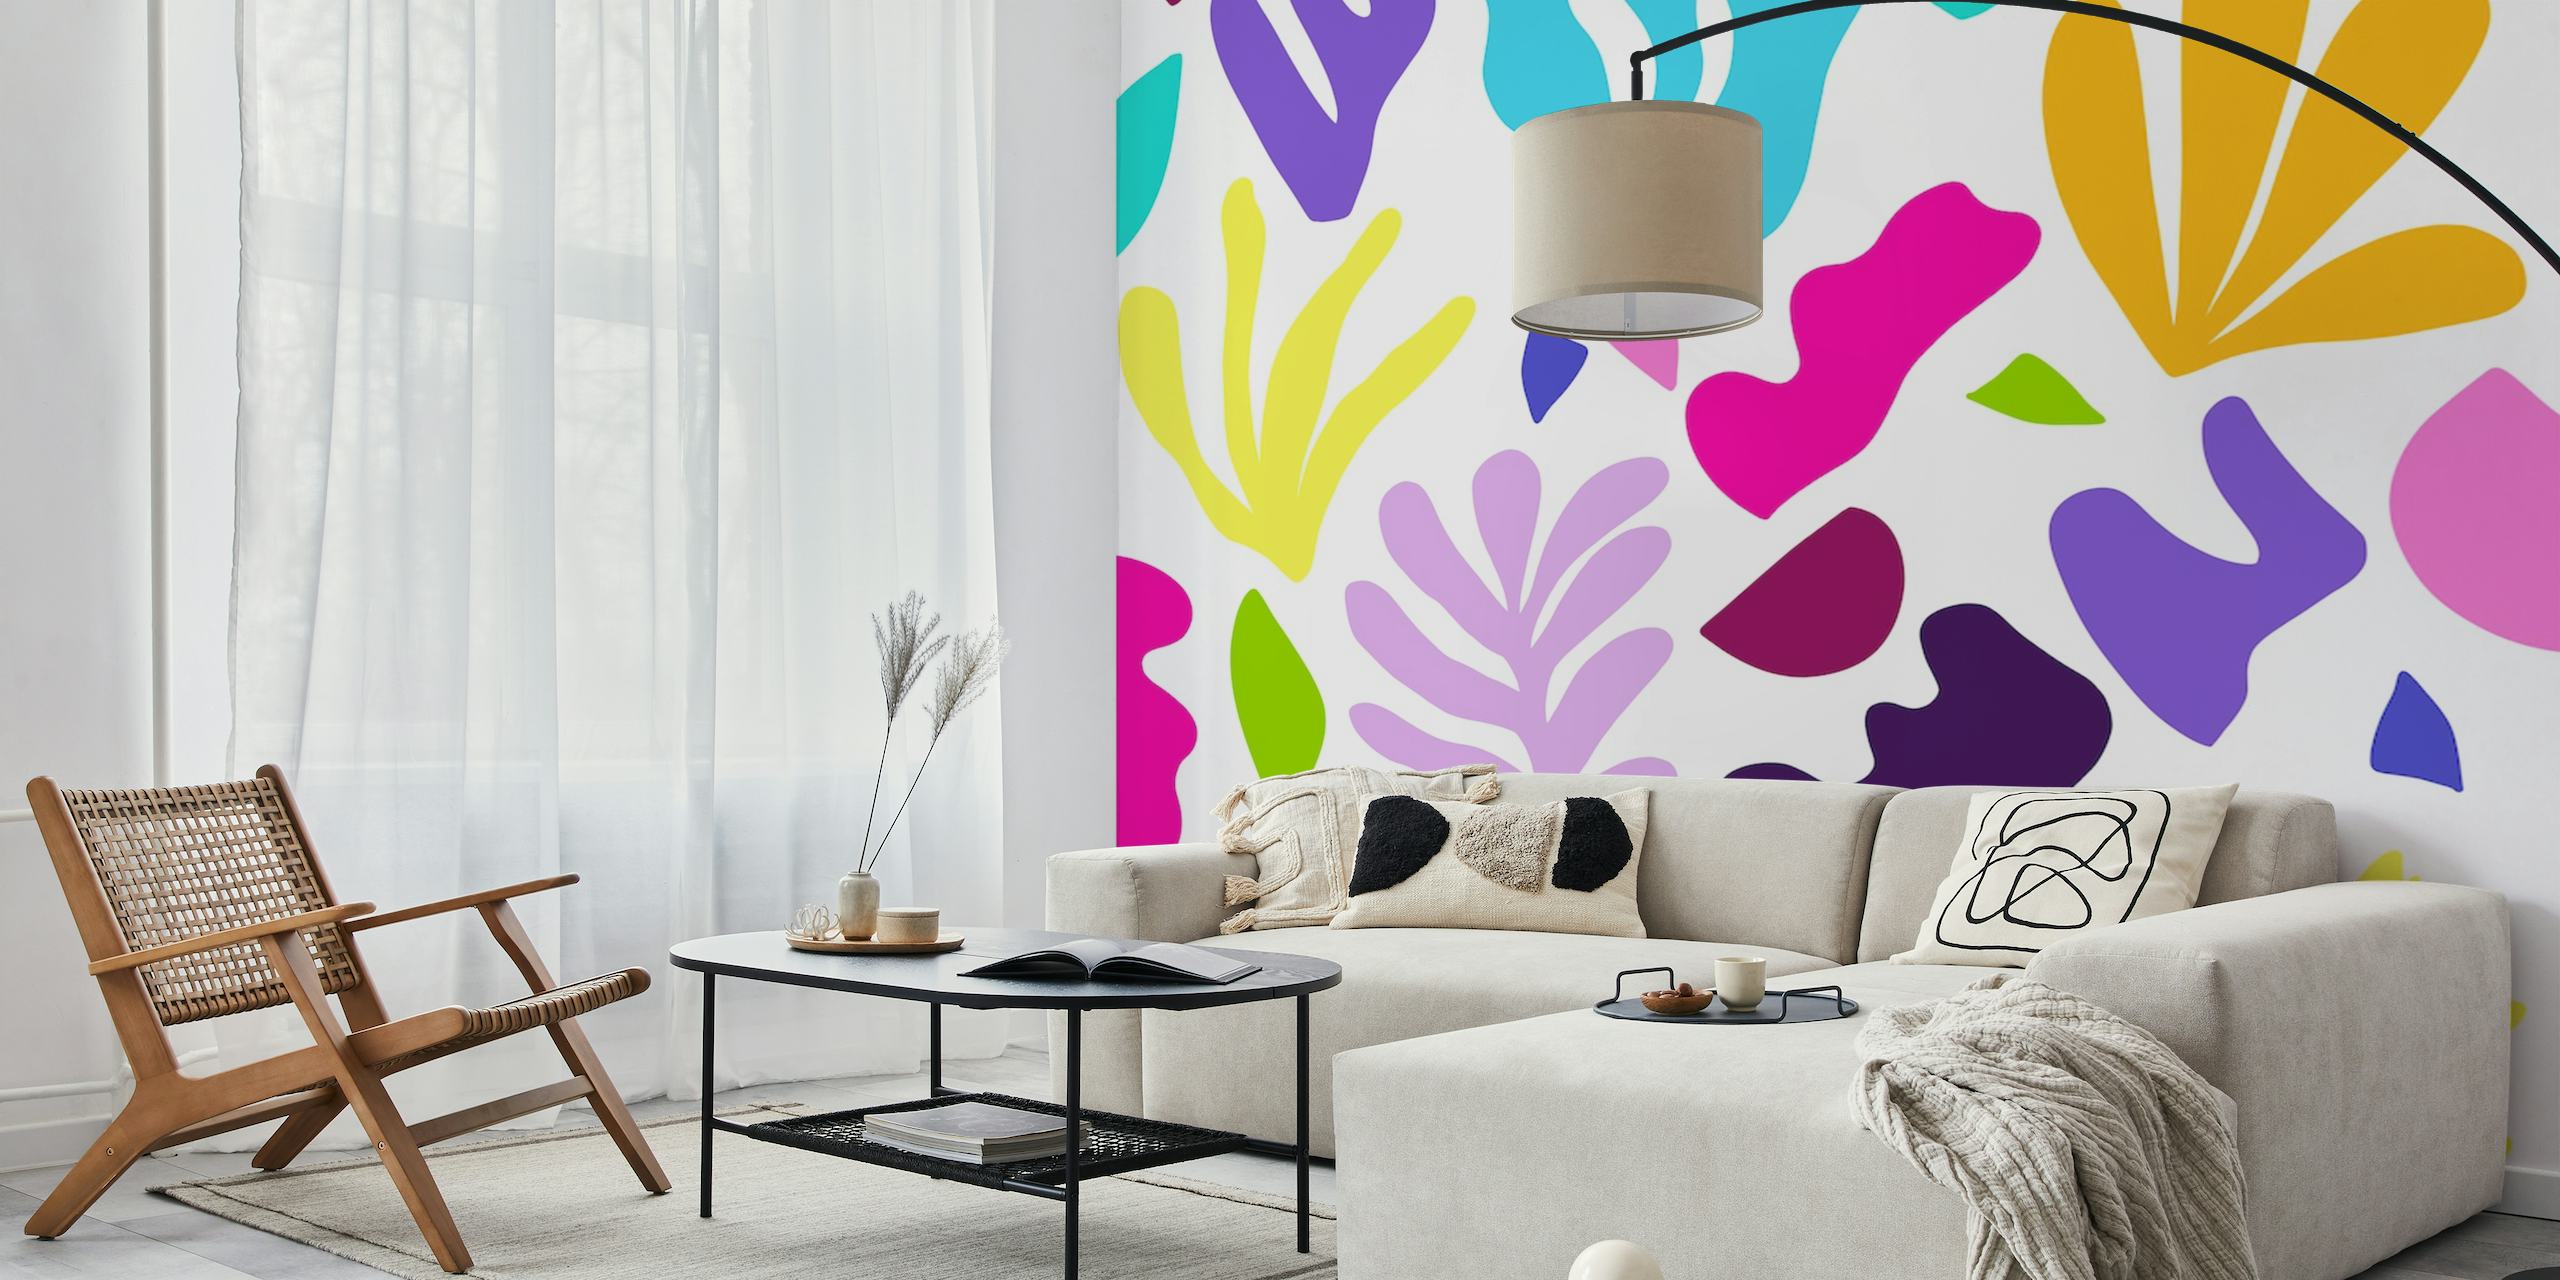 Design de mural de parede com ervas marinhas abstratas coloridas e formas geométricas